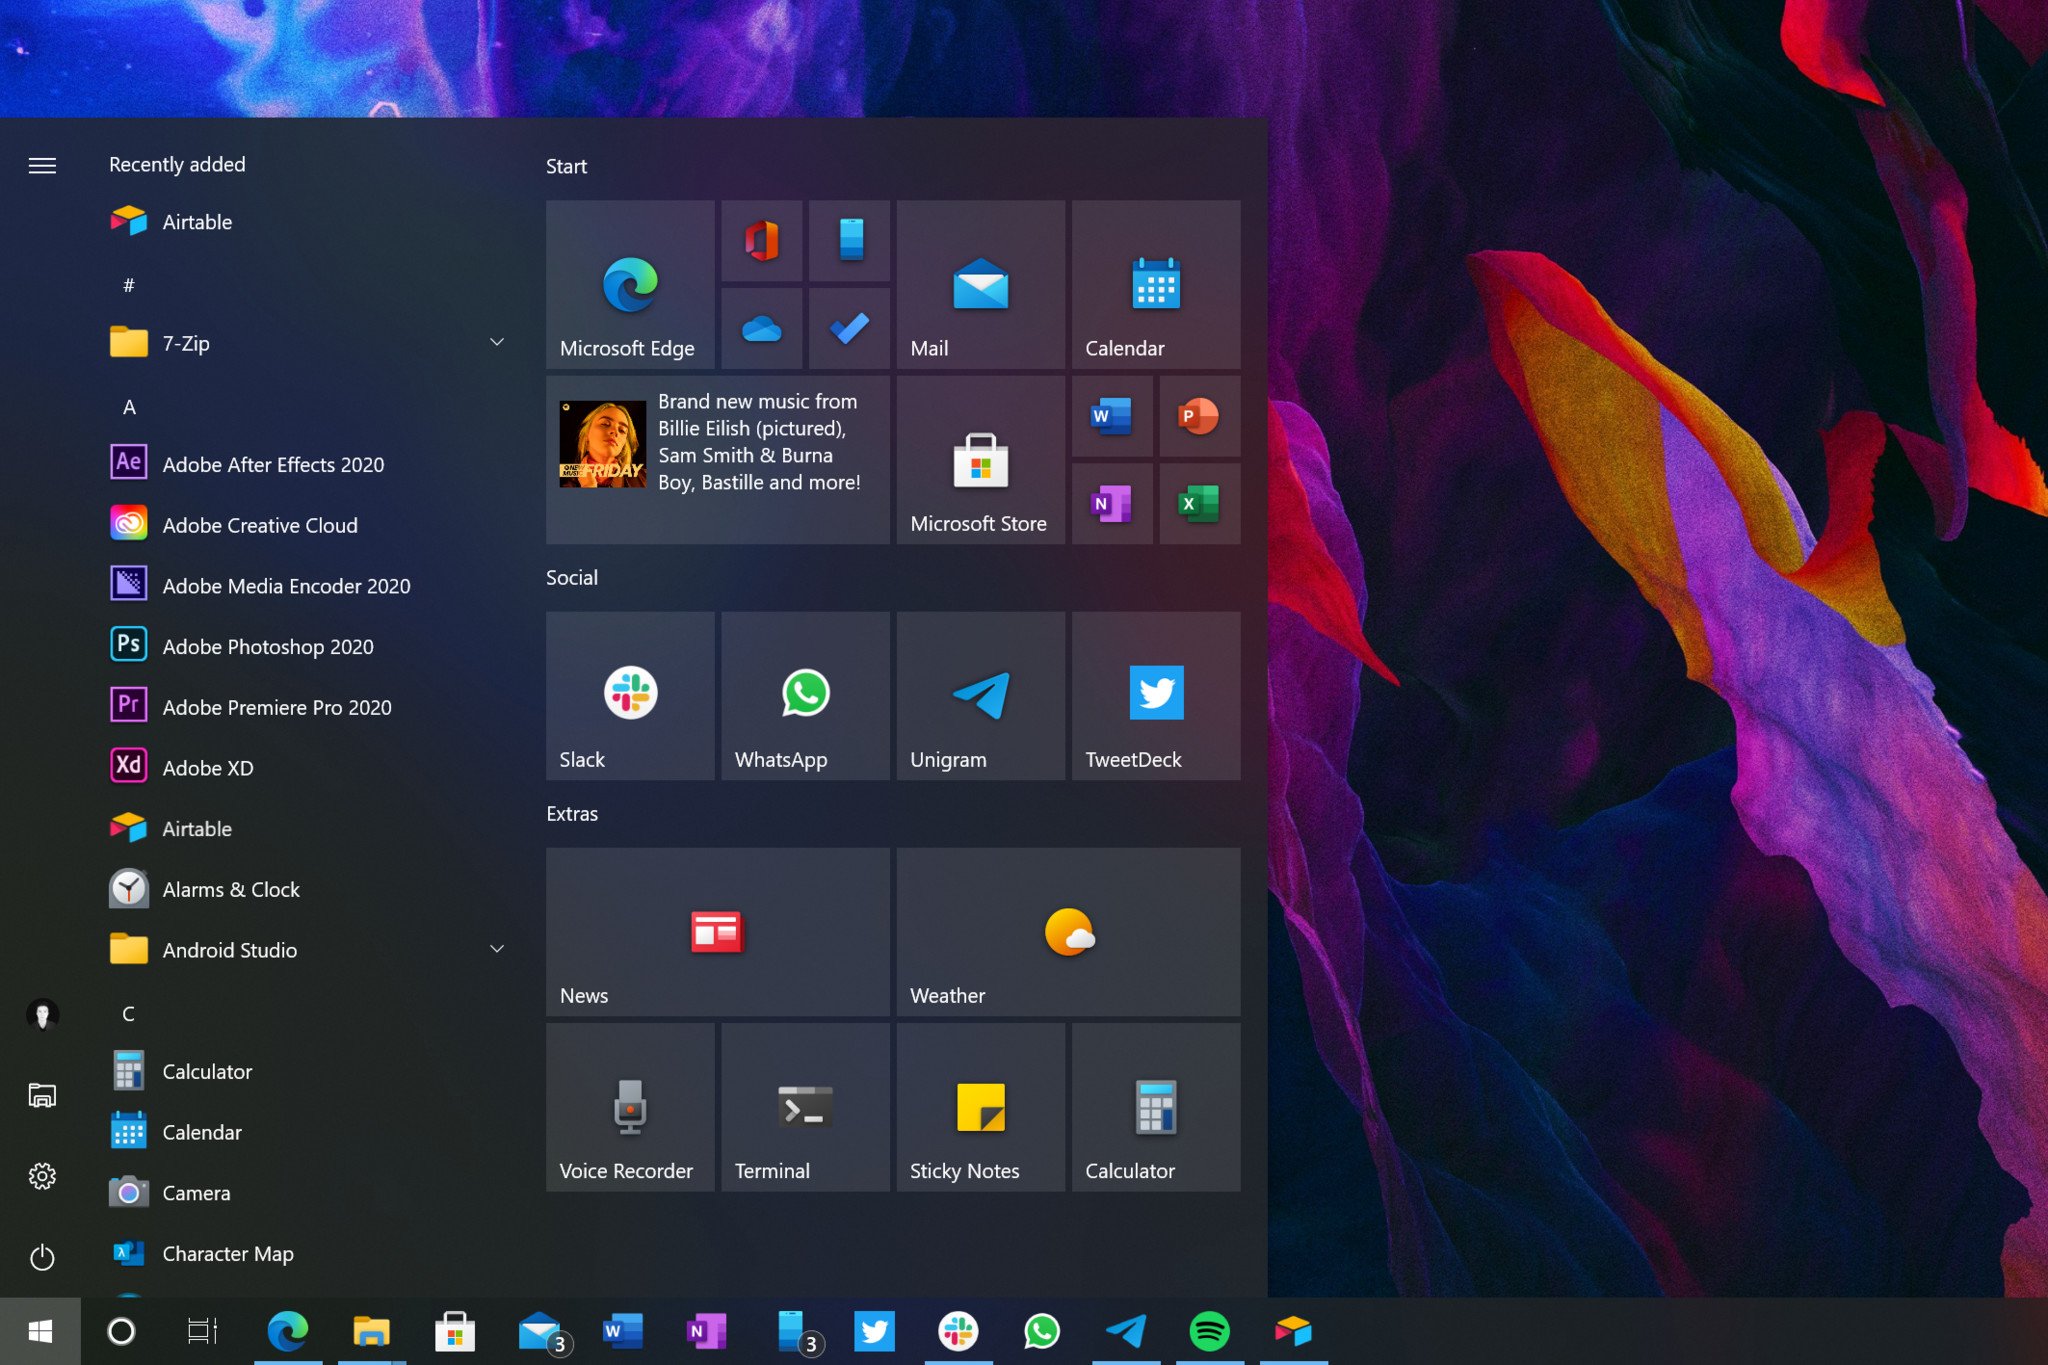 Windows 10 20H2 Update: Start Menu